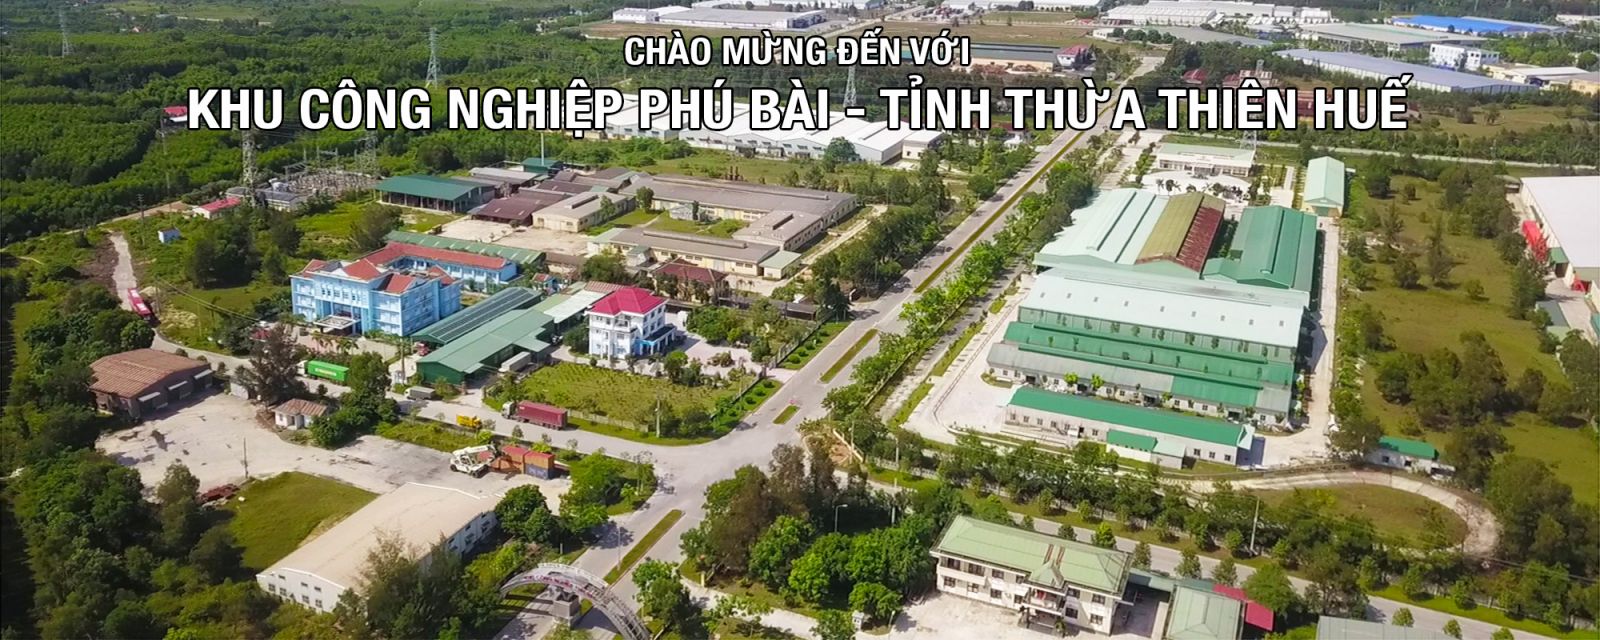 Khu công nghiệp Phú Bài